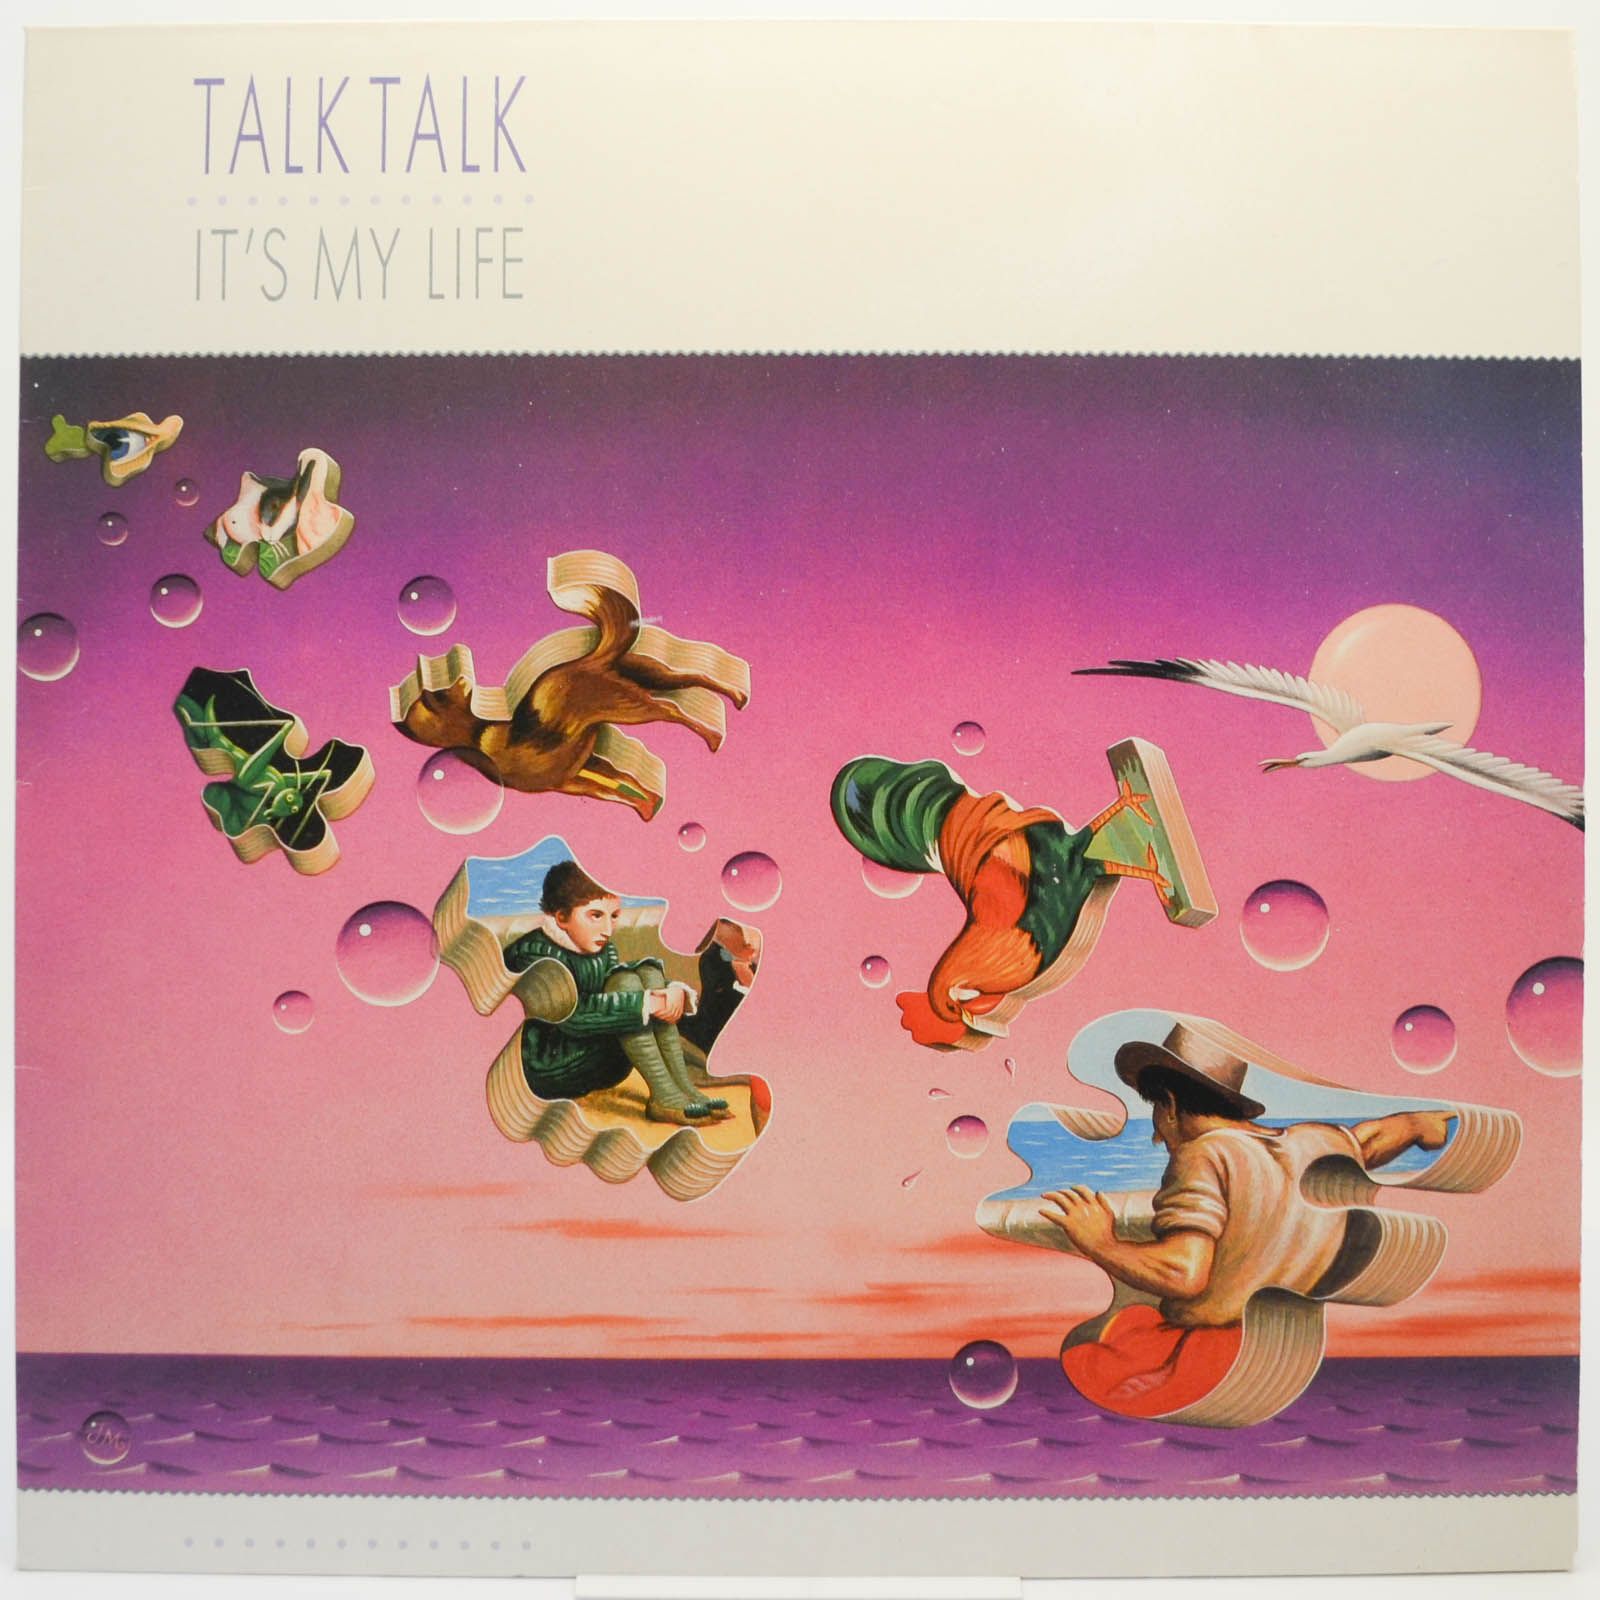 Talk Talk — It's My Life, 1984